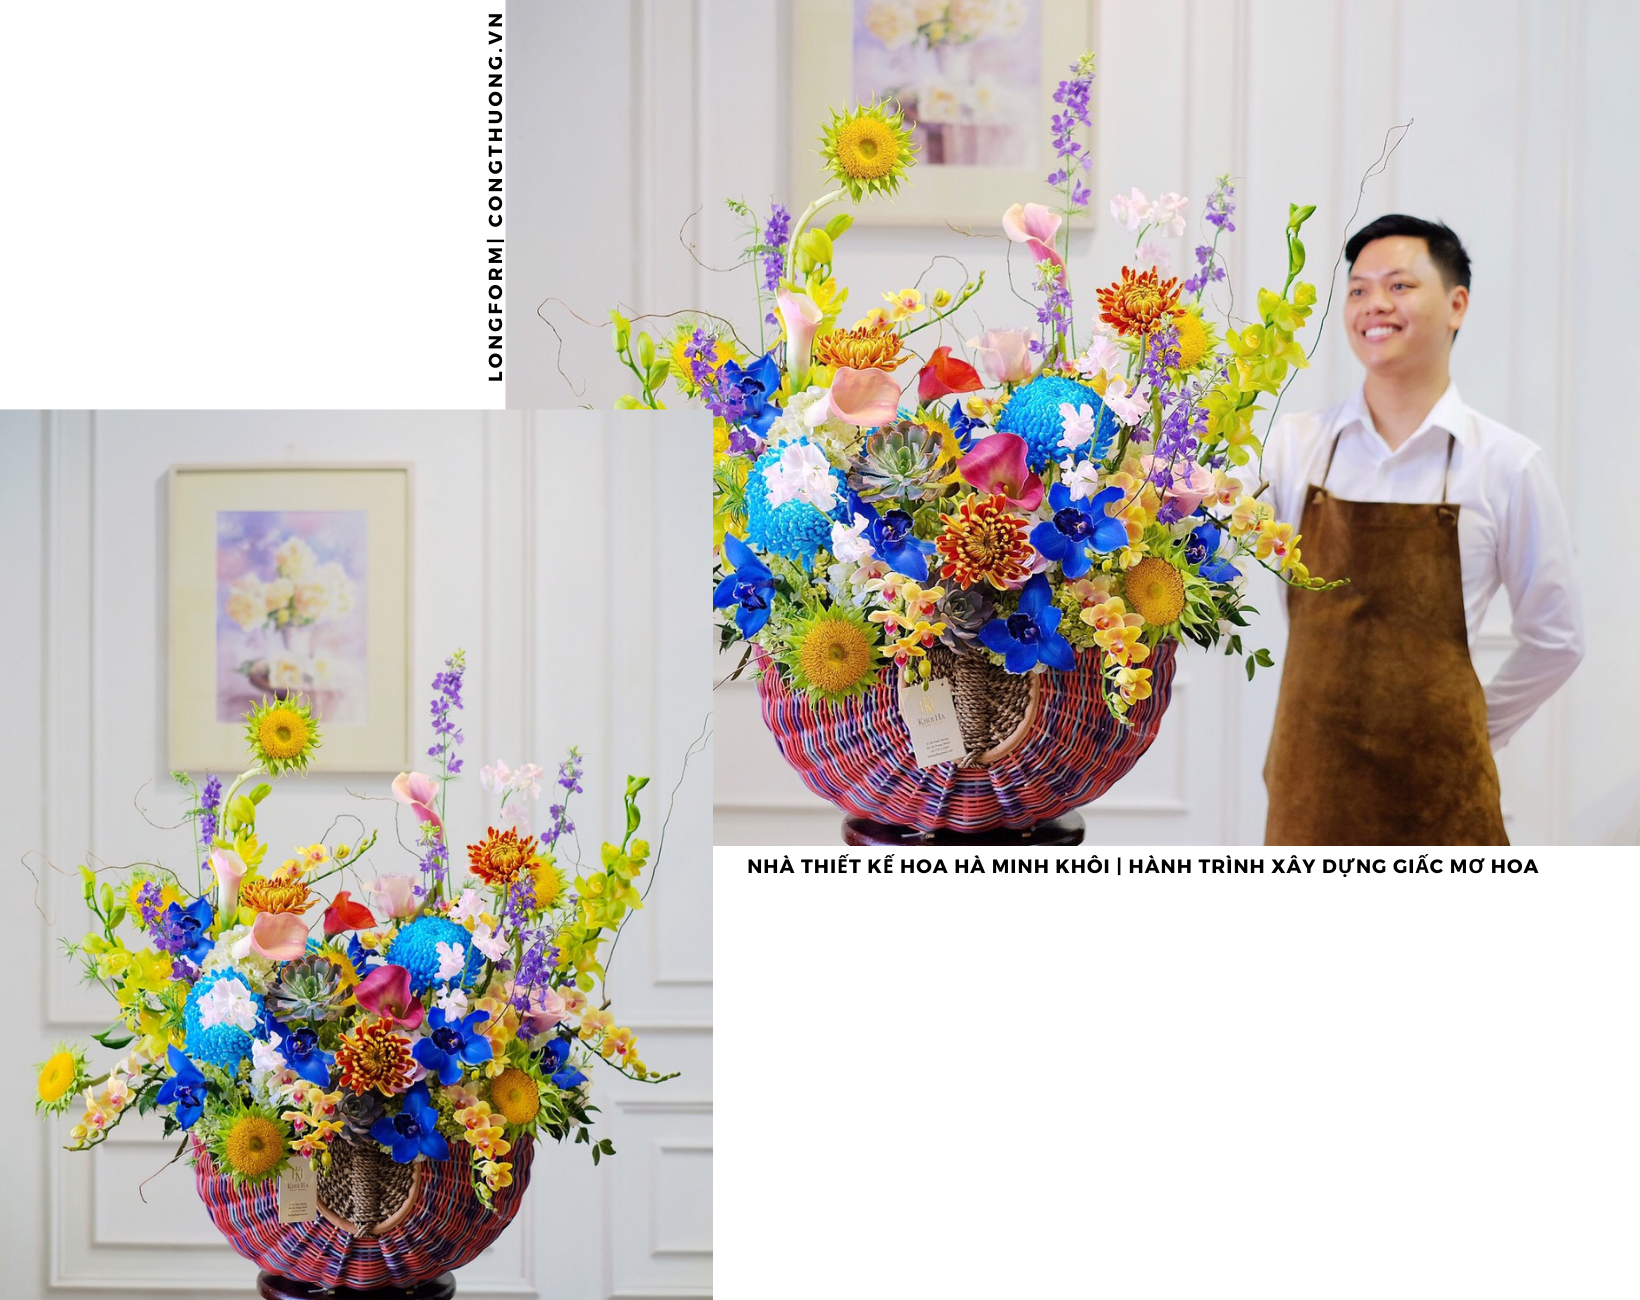 Longform | Nhà thiết kế hoa Hà Minh Khôi: Hành trình xây dựng giấc mơ hoa